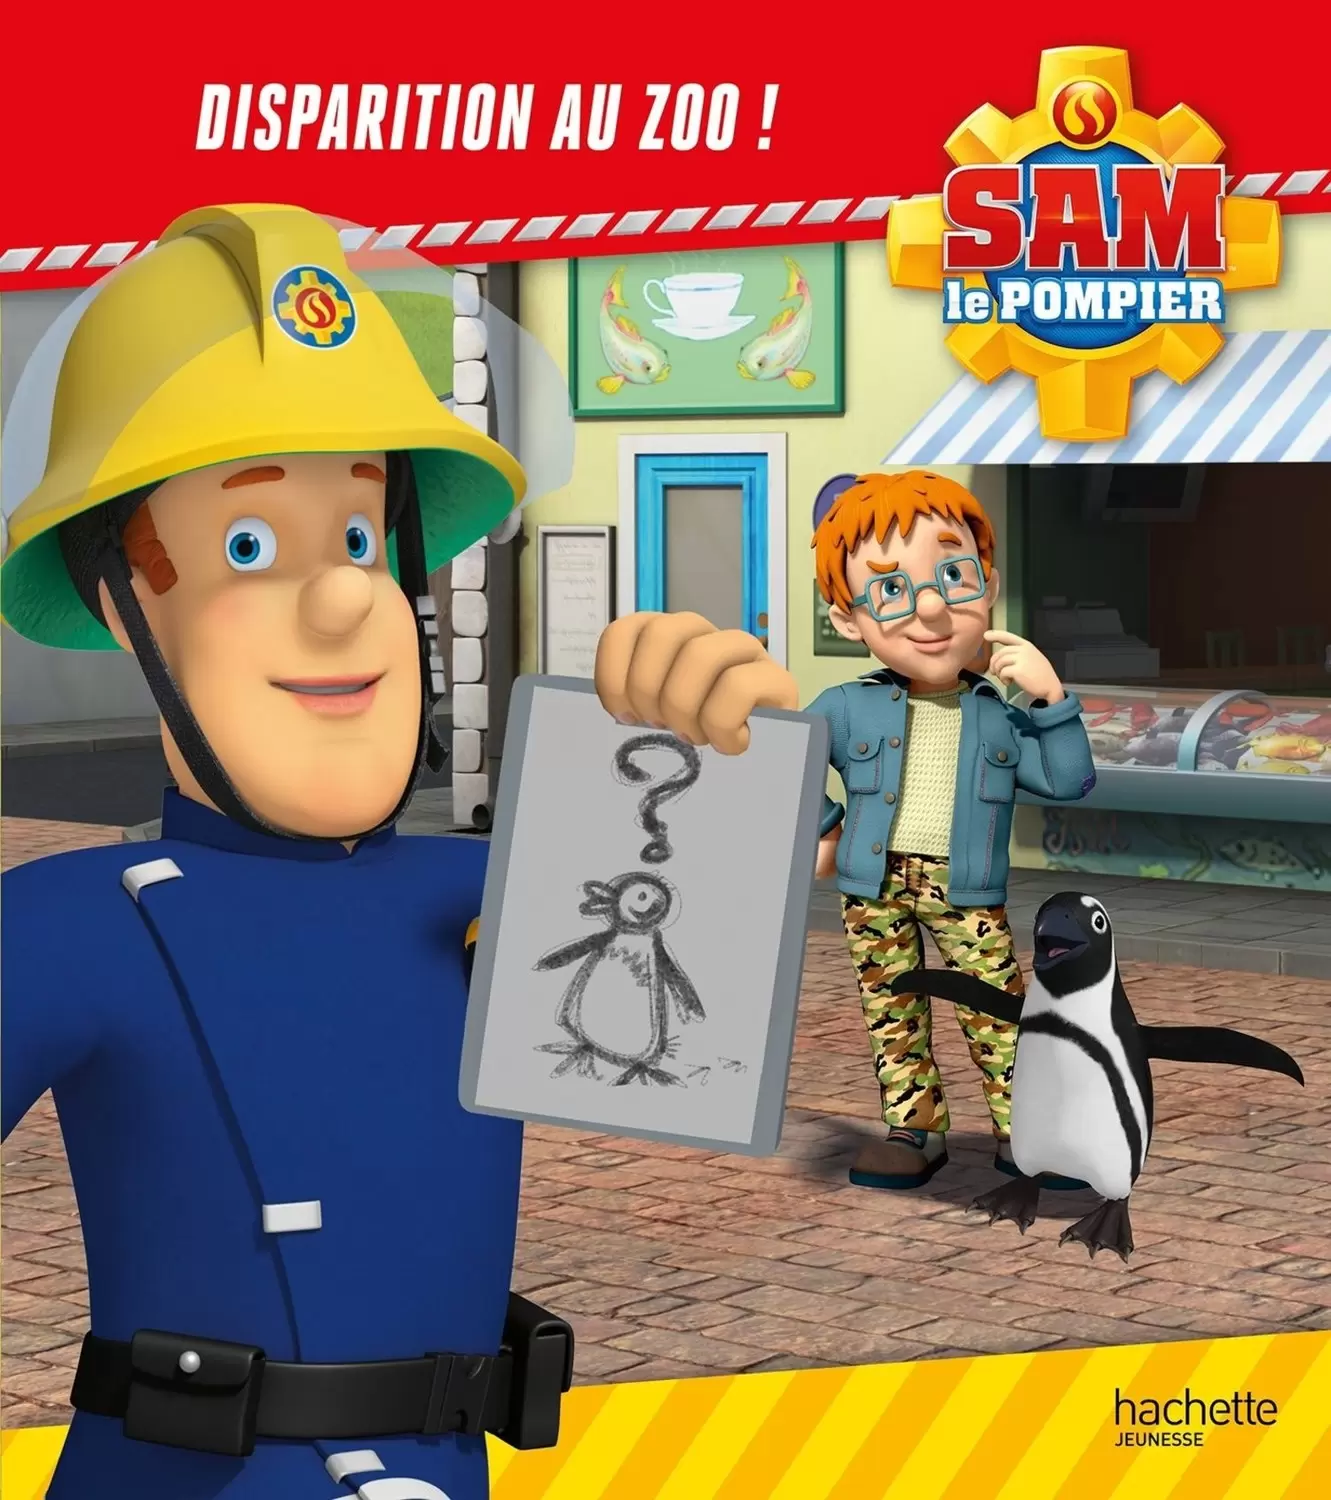 Sam le pompier - Disparition au zoo !